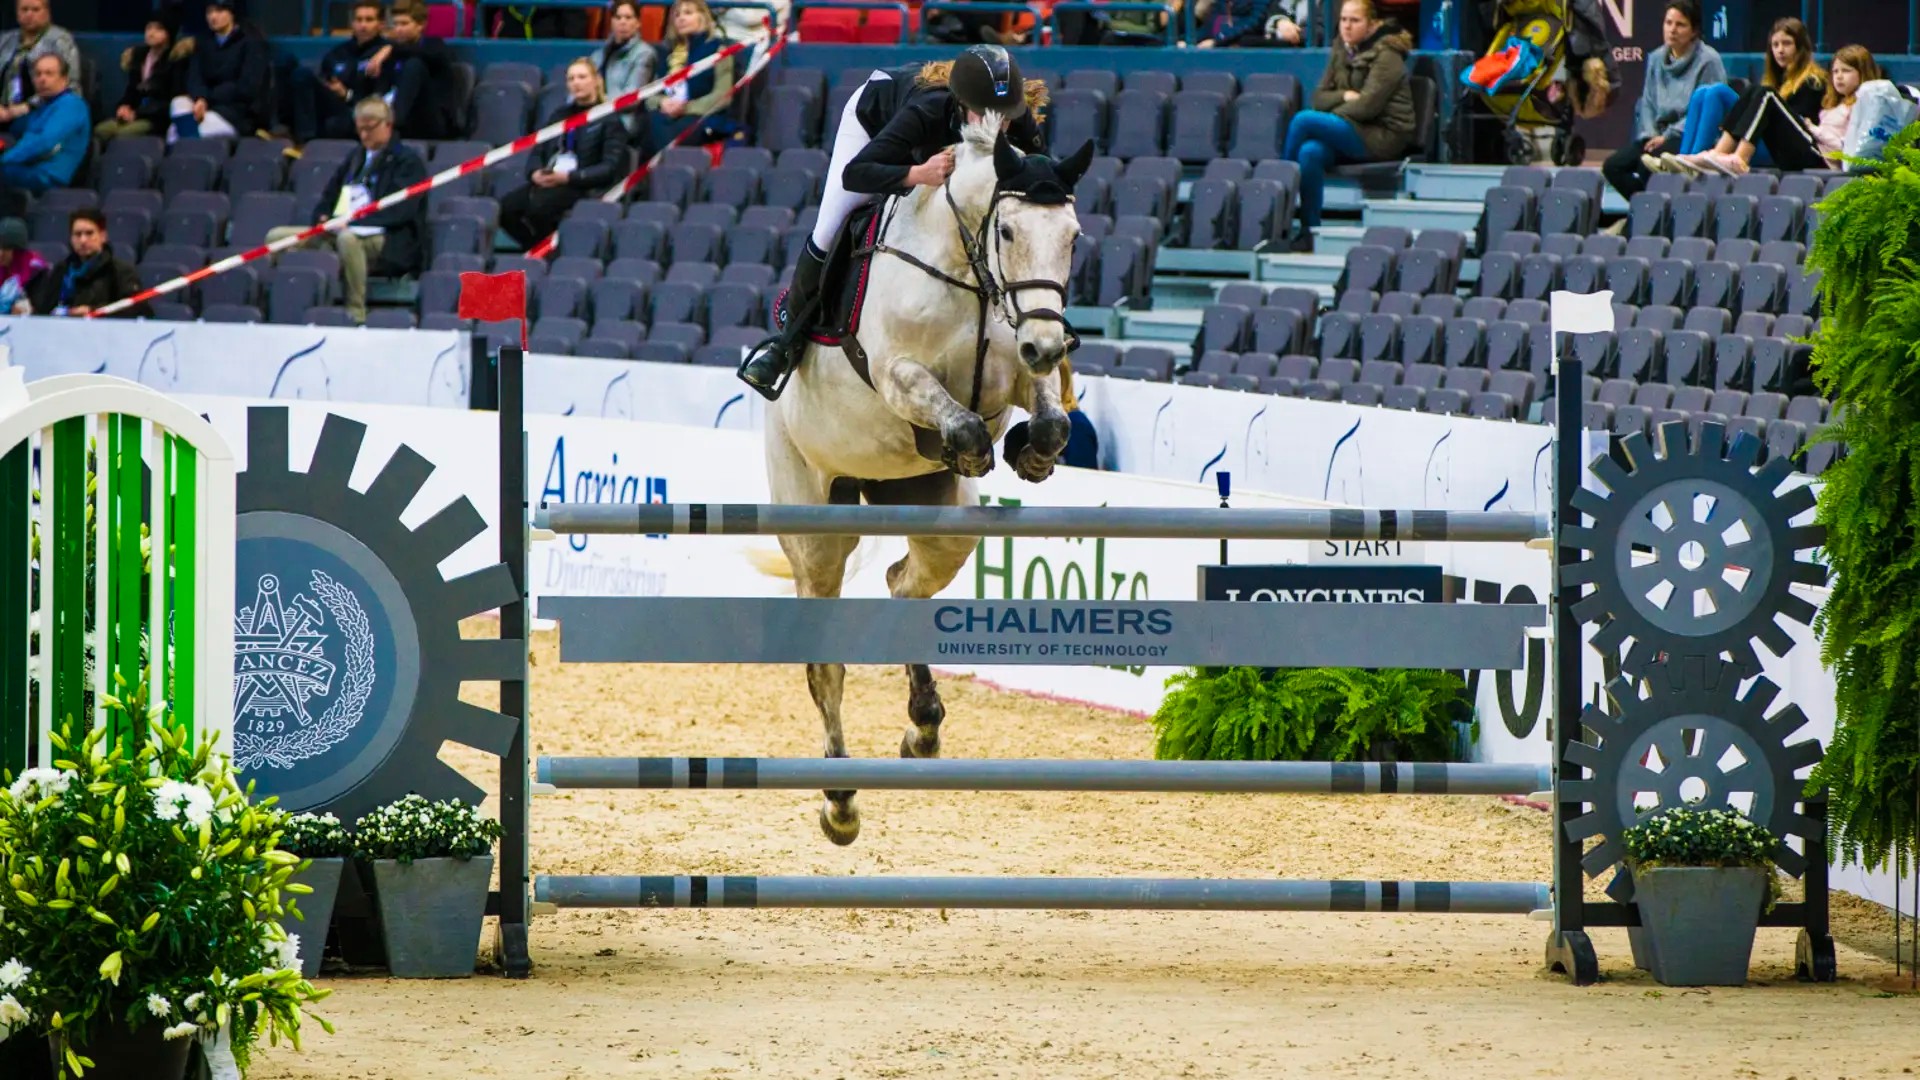 Chalmershindret 2018 på Gothenburg Horse Show i Scandinavium. Hindret mäter hästarnas avstampskraft i hoppet och landningen.